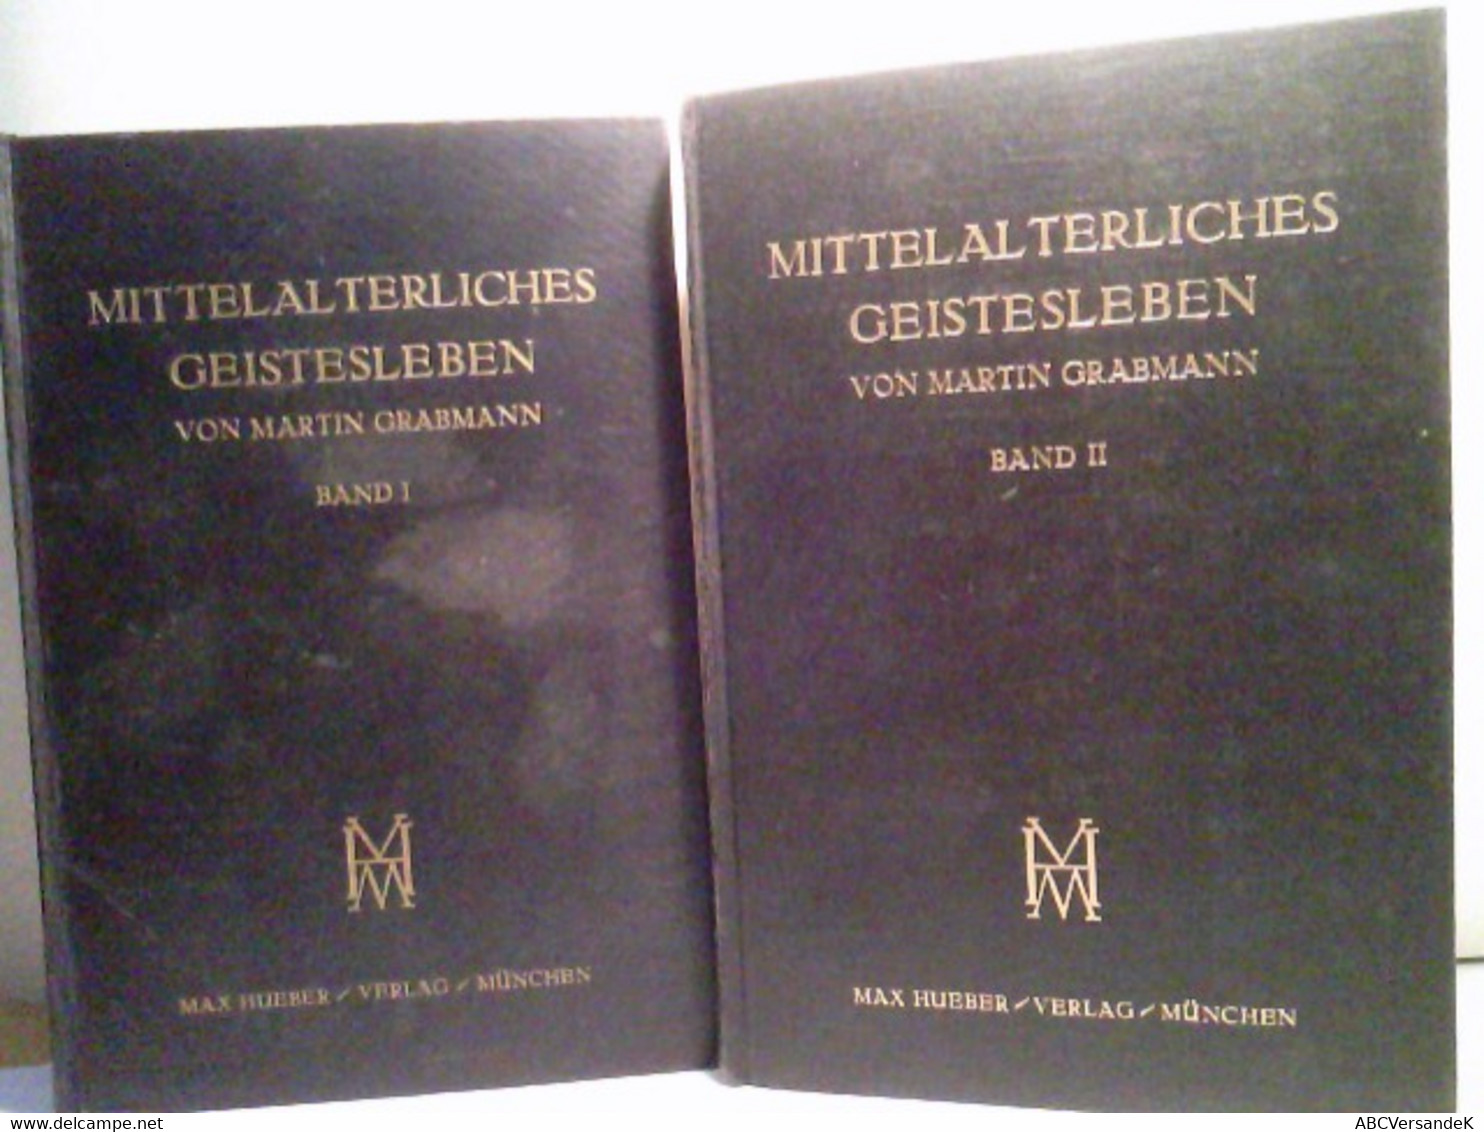 Konvolut Bestehend Aus 2 Bänden, Zum Thema: Mittelalterliches Geistesleben. - Philosophy